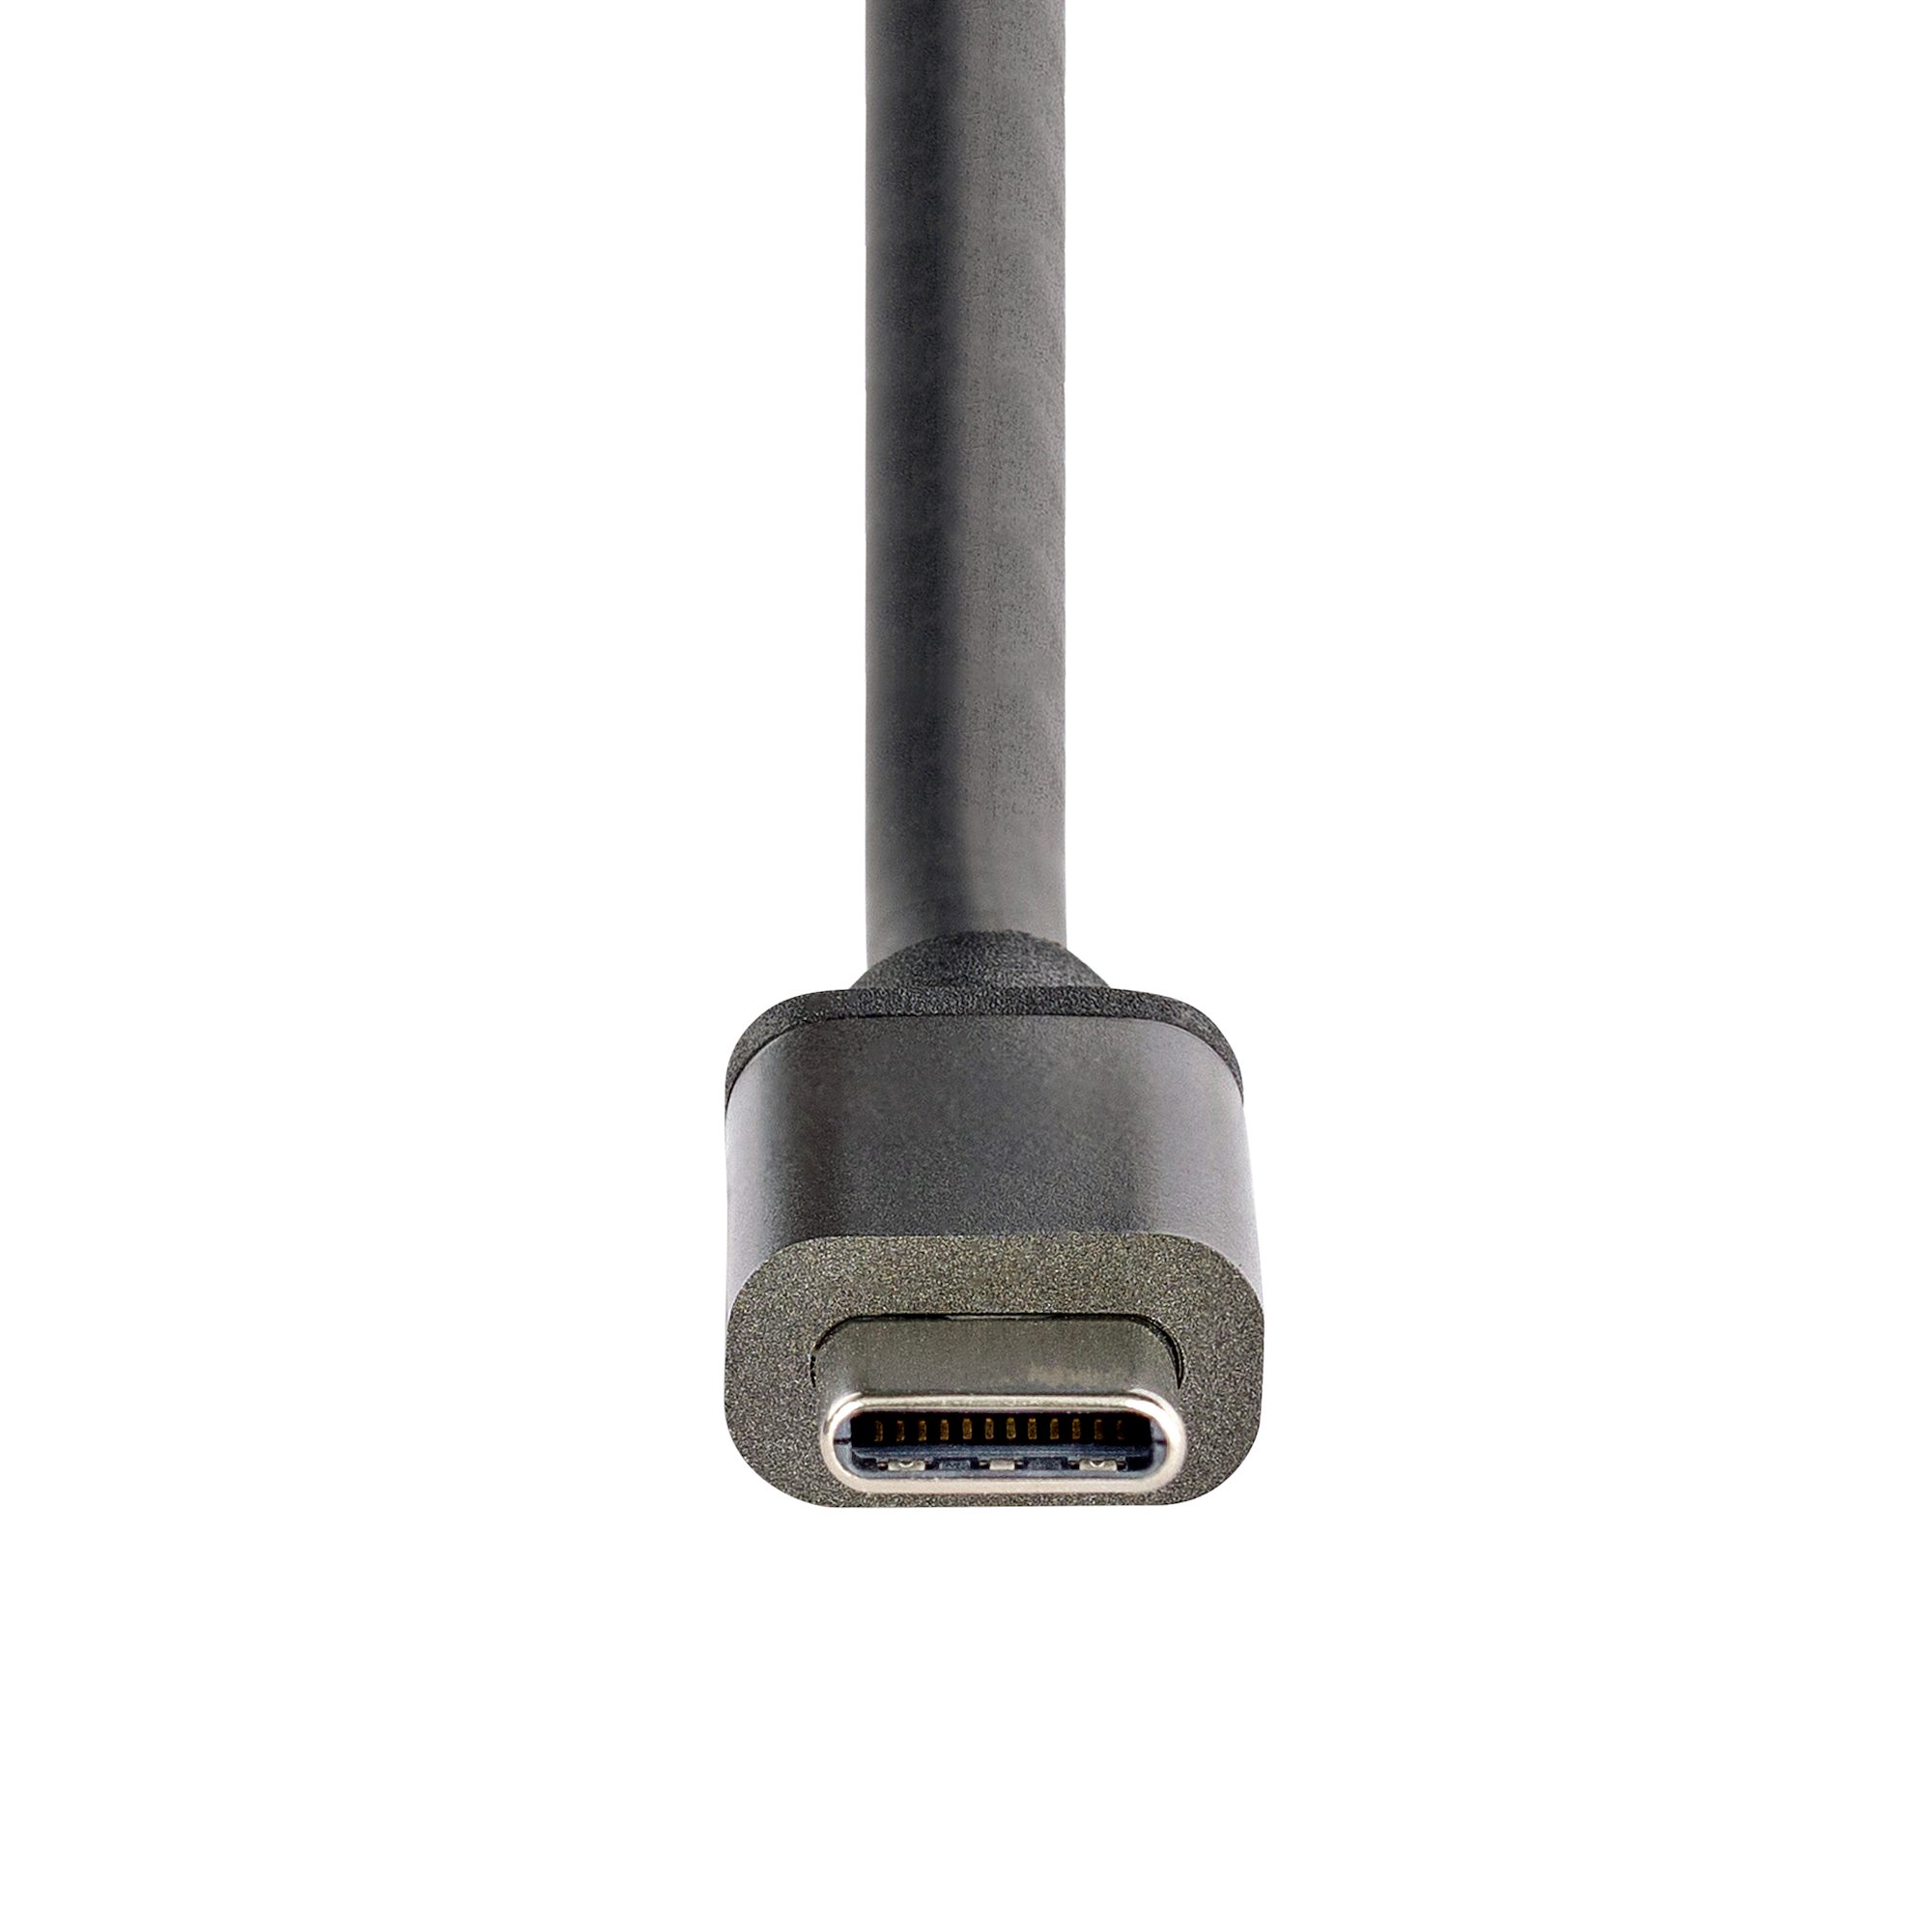 3-Port USB-C to HDMI MST Hub, 4K 60Hz - USB-C Display Adapters, Display &  Video Adapters